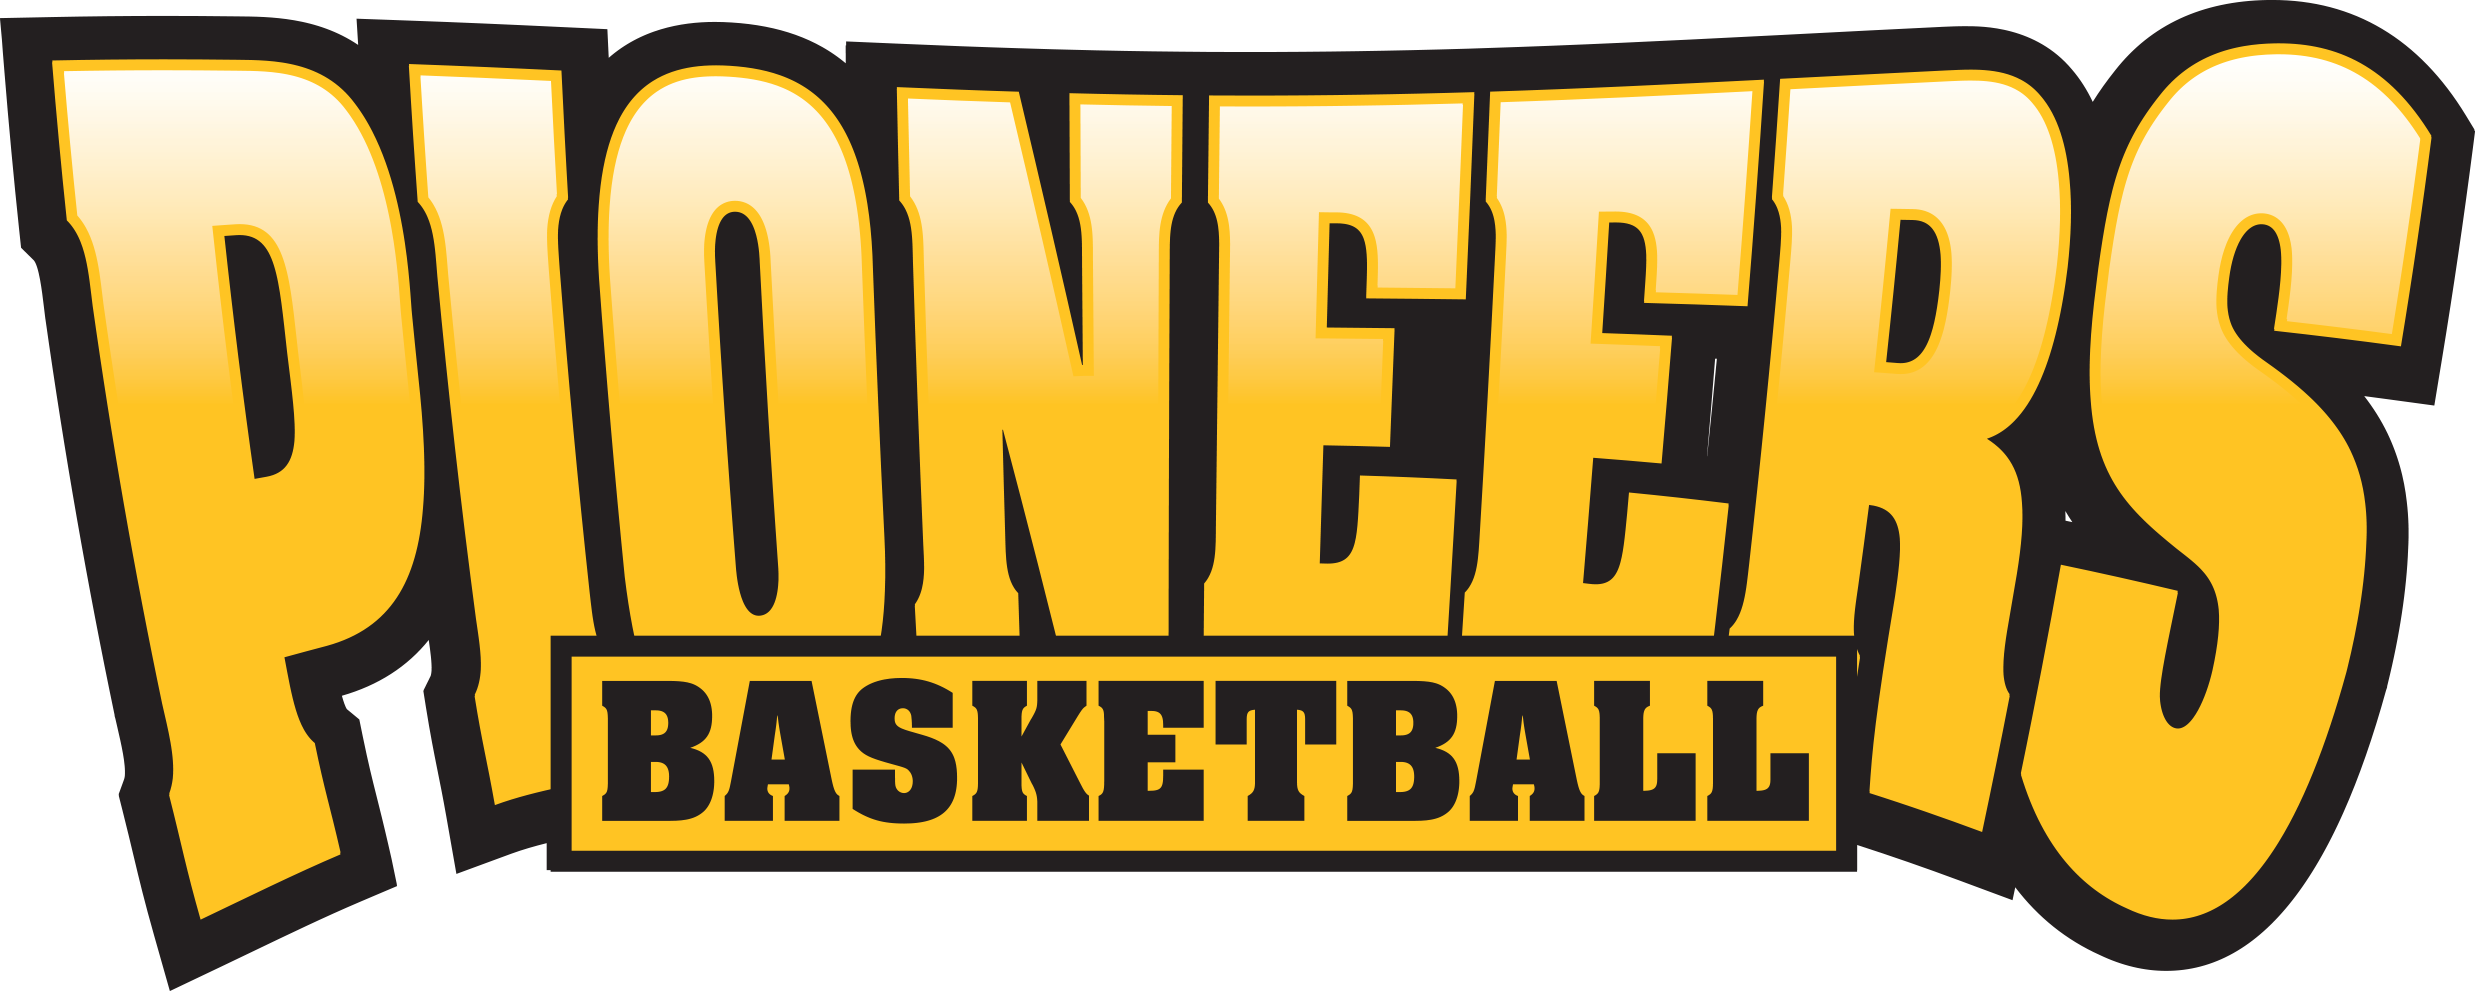 Pioneers Basketball Club Inc logo